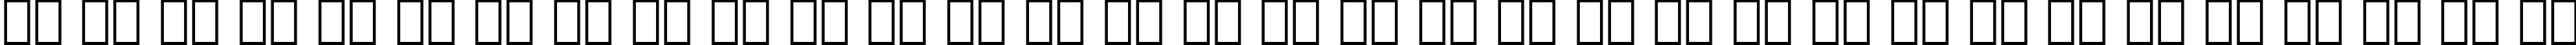 Пример написания русского алфавита шрифтом Futura Black BT